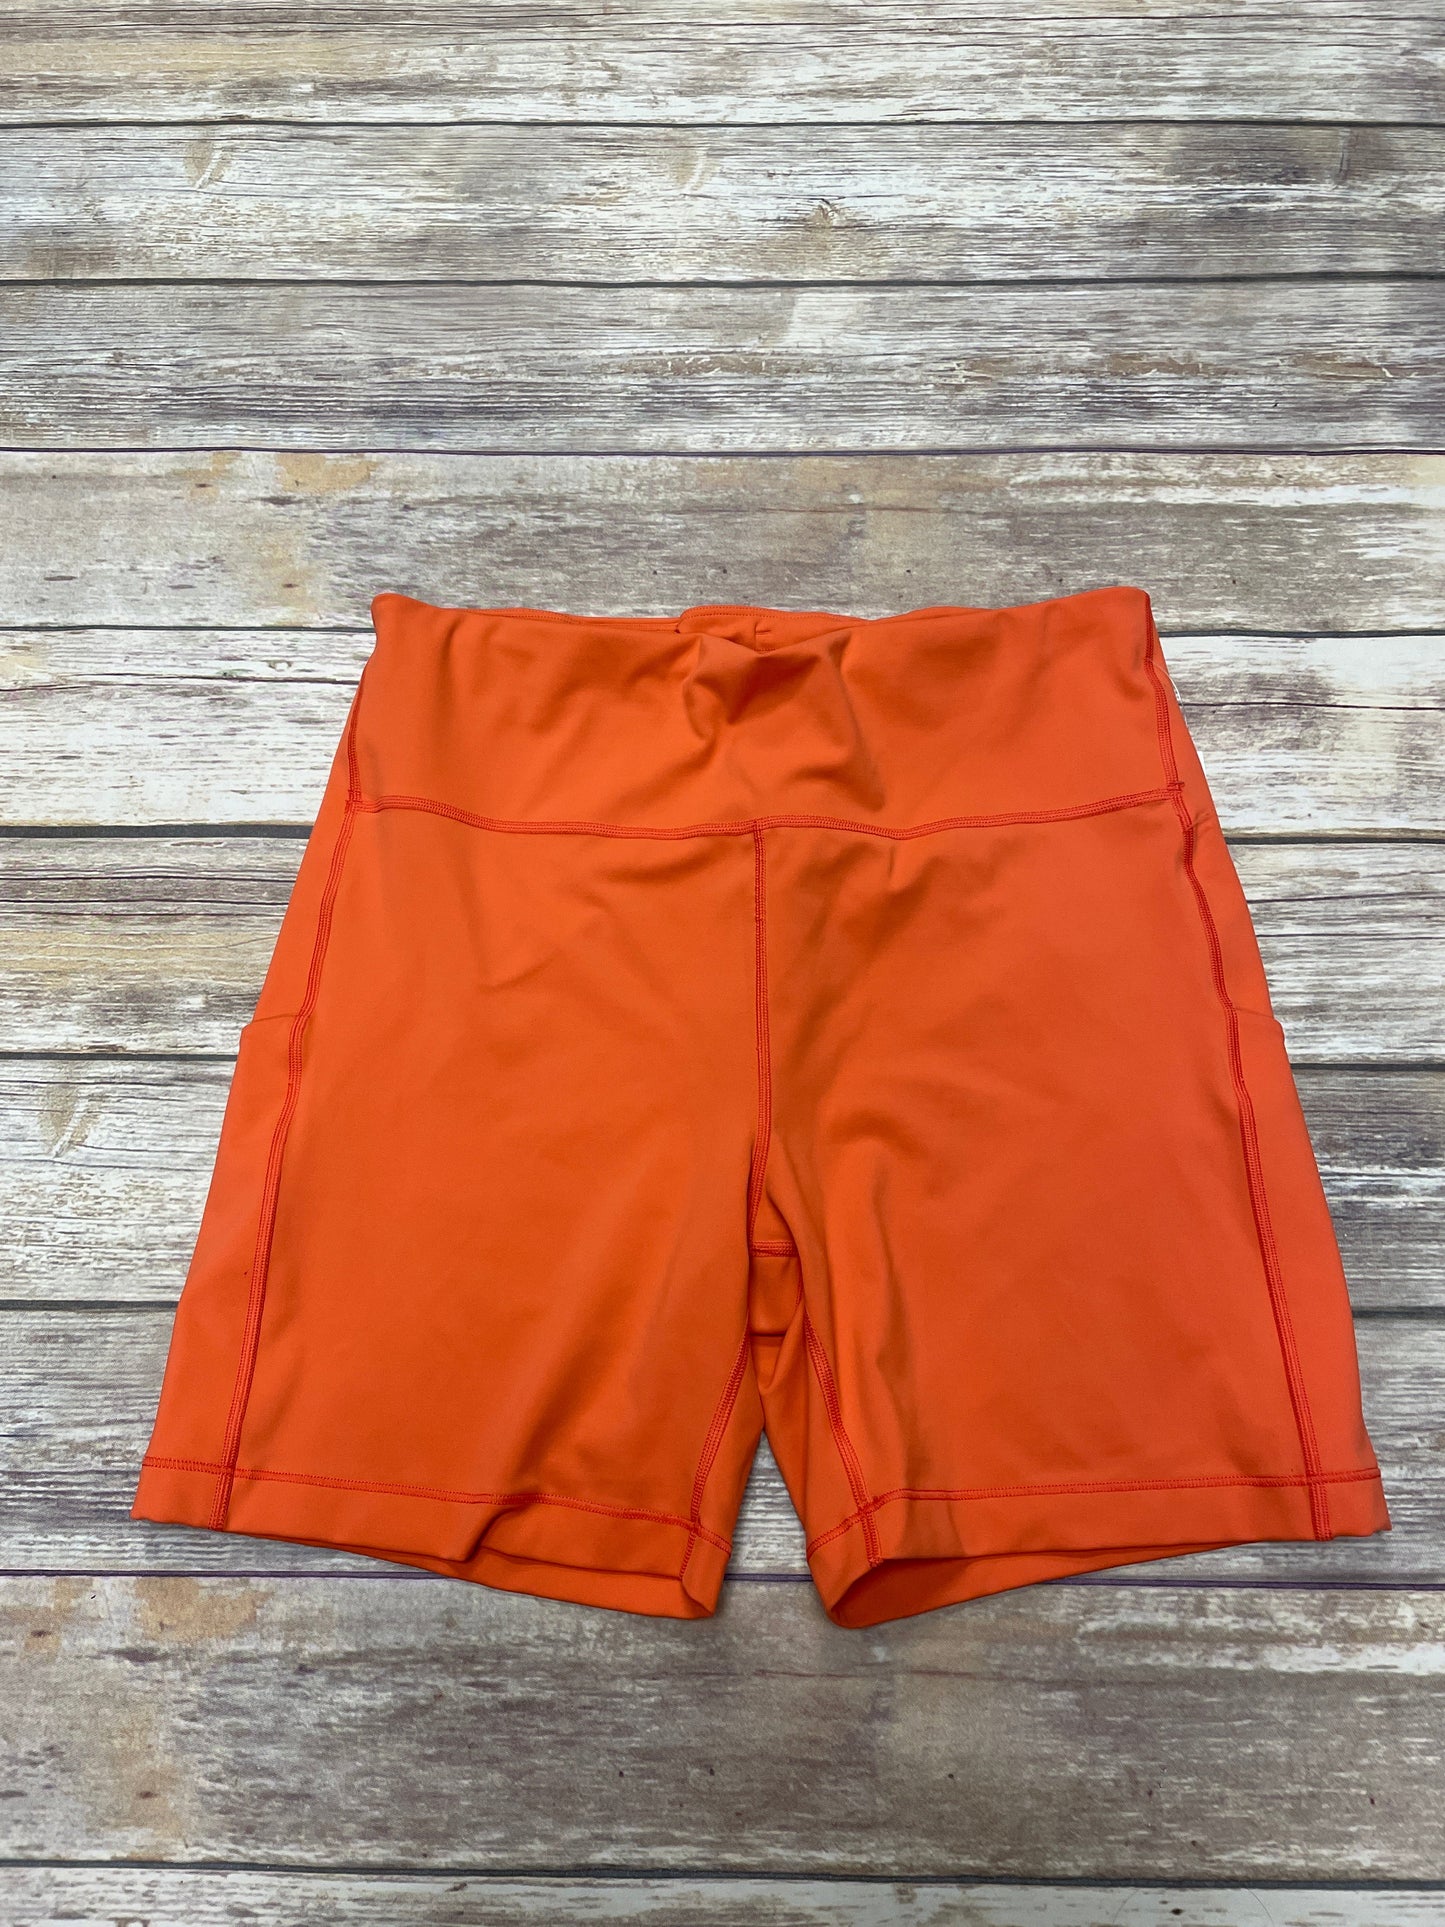 Orange Athletic Shorts Athleta, Size 2x